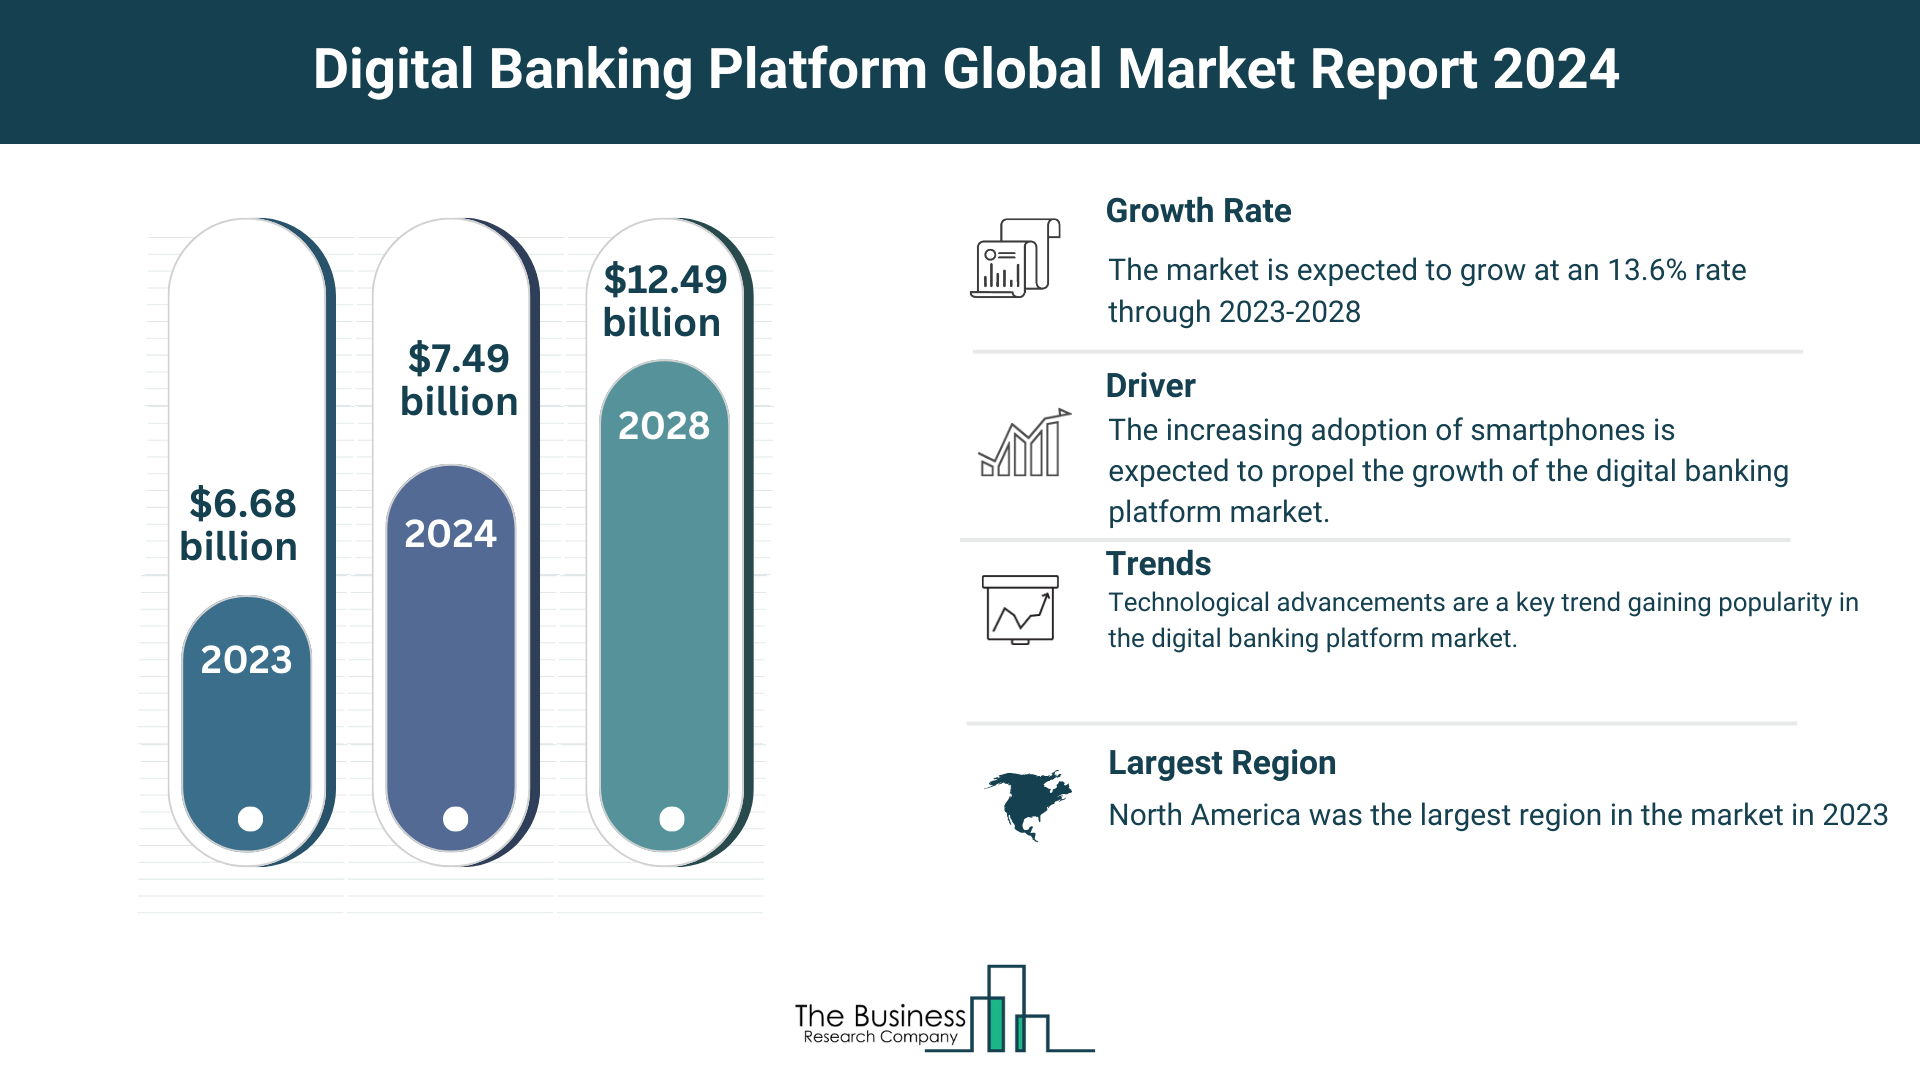 Global Digital Banking Platform Market